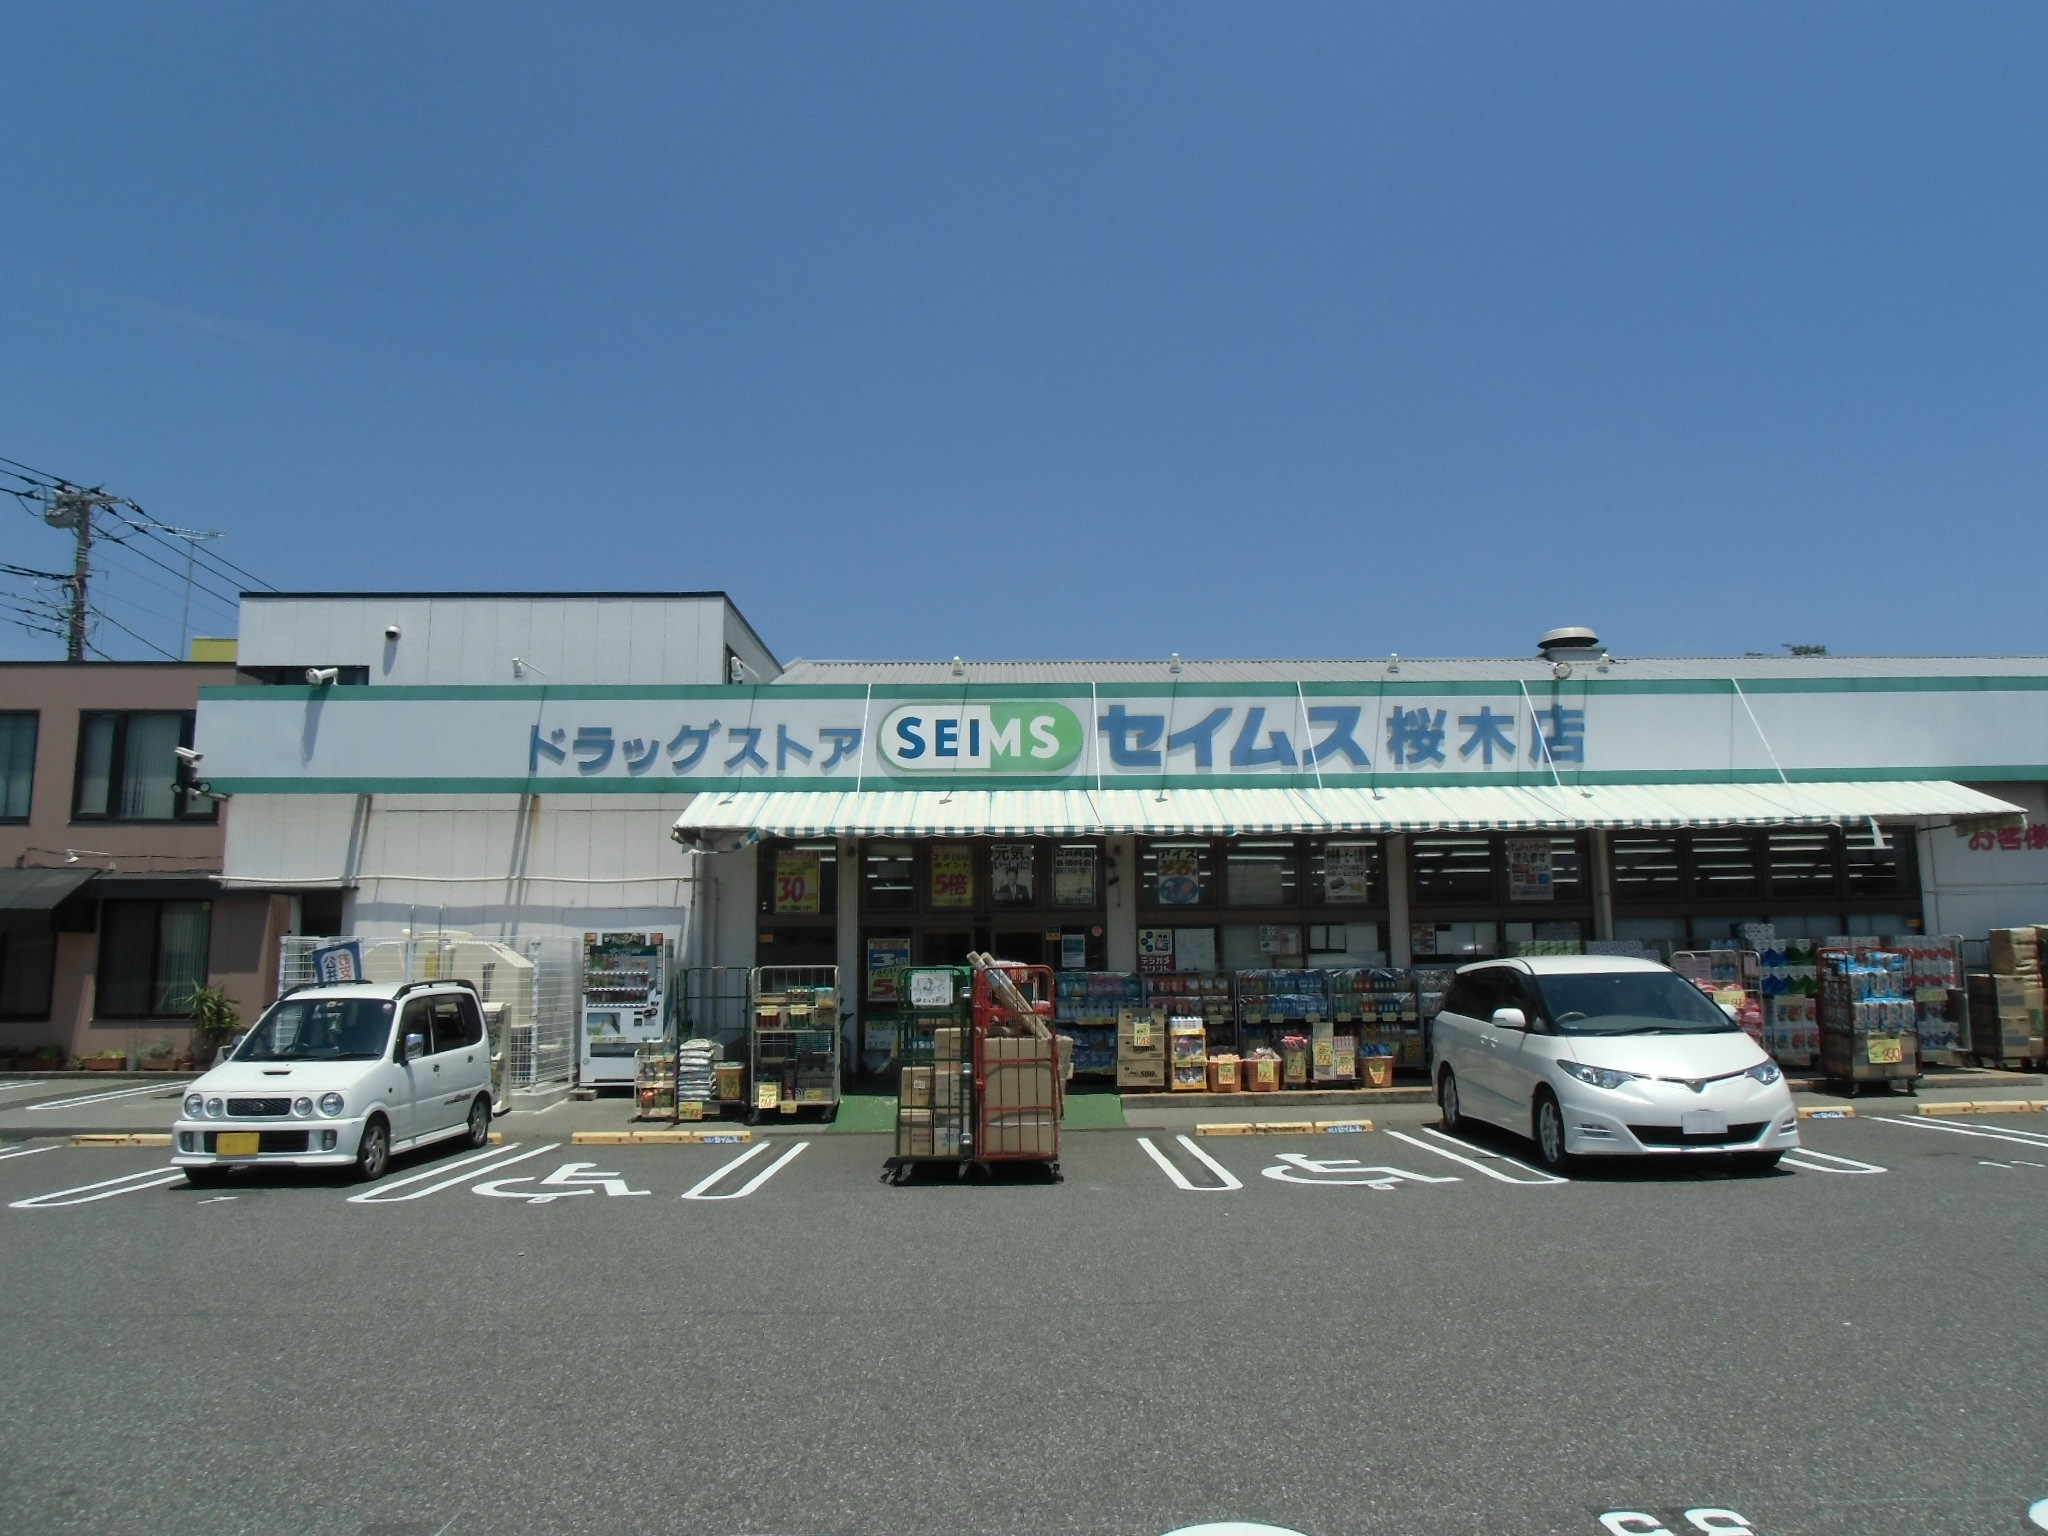 Dorakkusutoa. Drag Seimusu Sakuragi shop 601m until (drugstore)